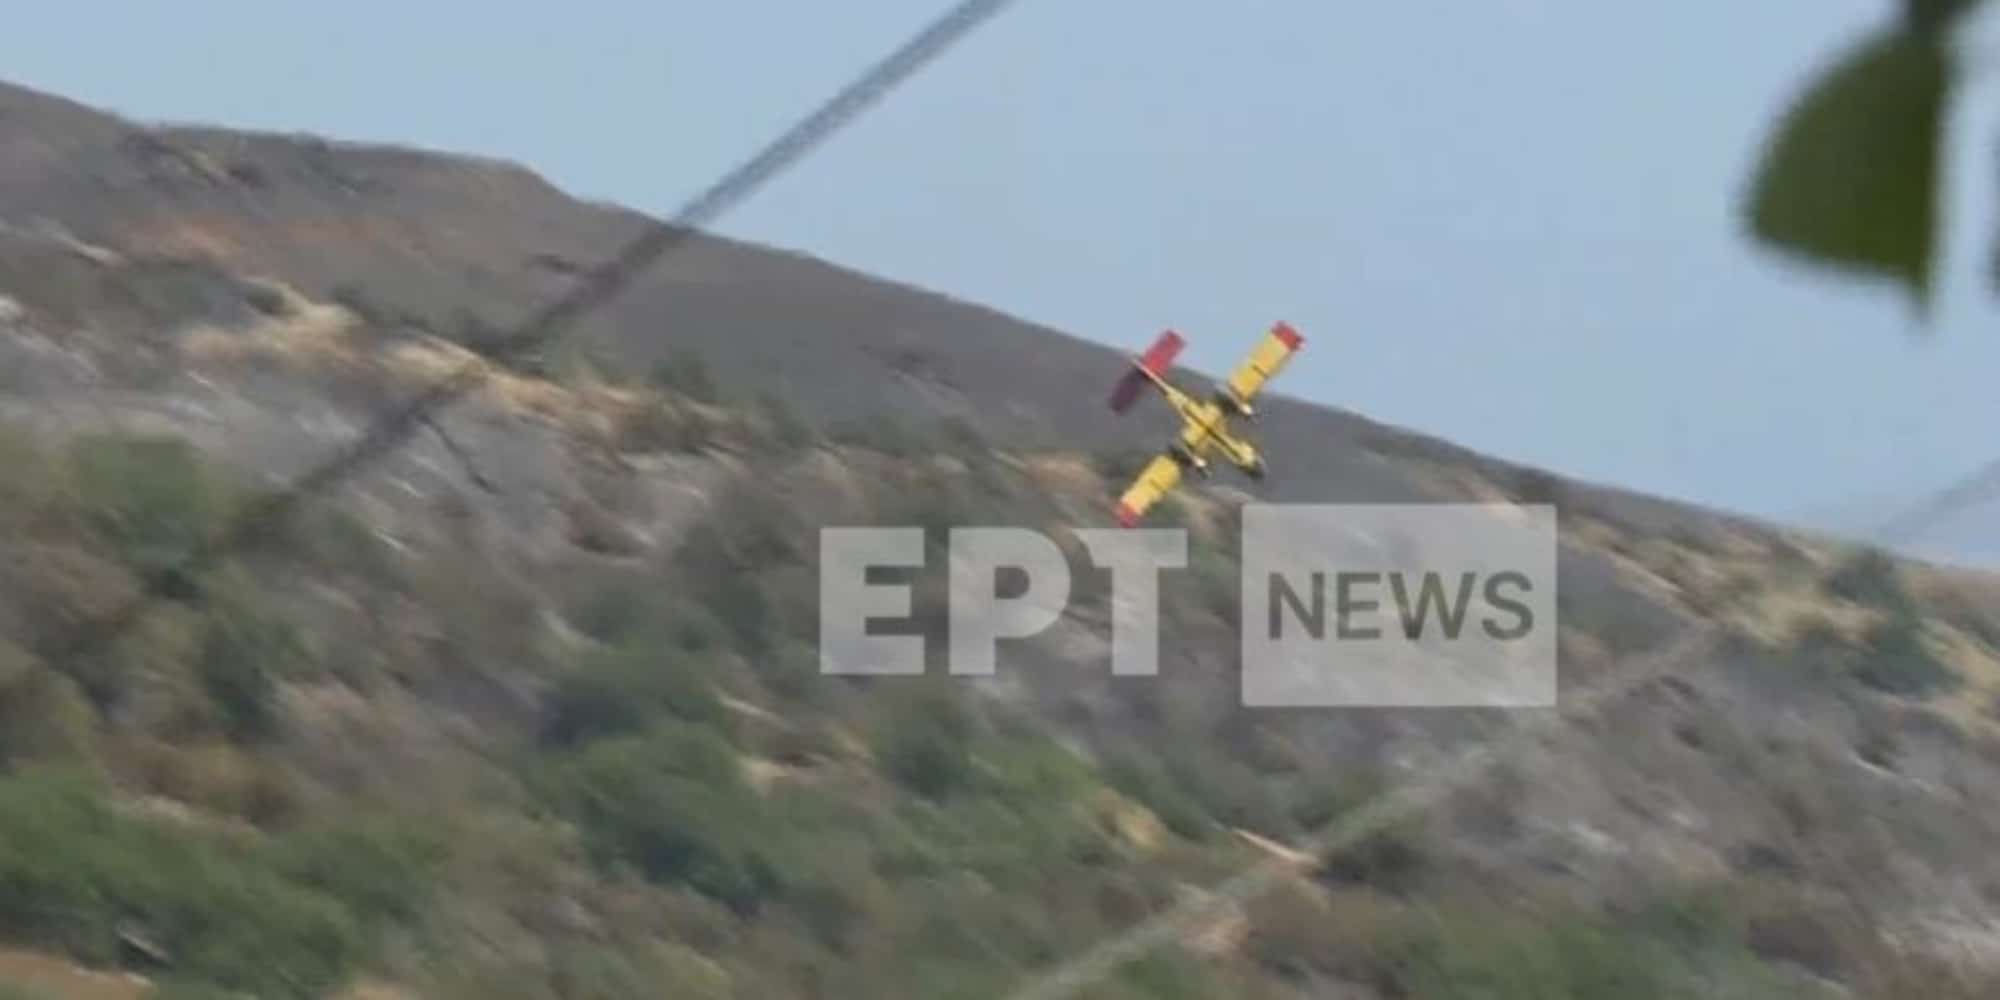 canadair ptosi - Βίντεο-σοκ από την πτώση του Canadair στην Κάρυστο - Σκληρές εικόνες